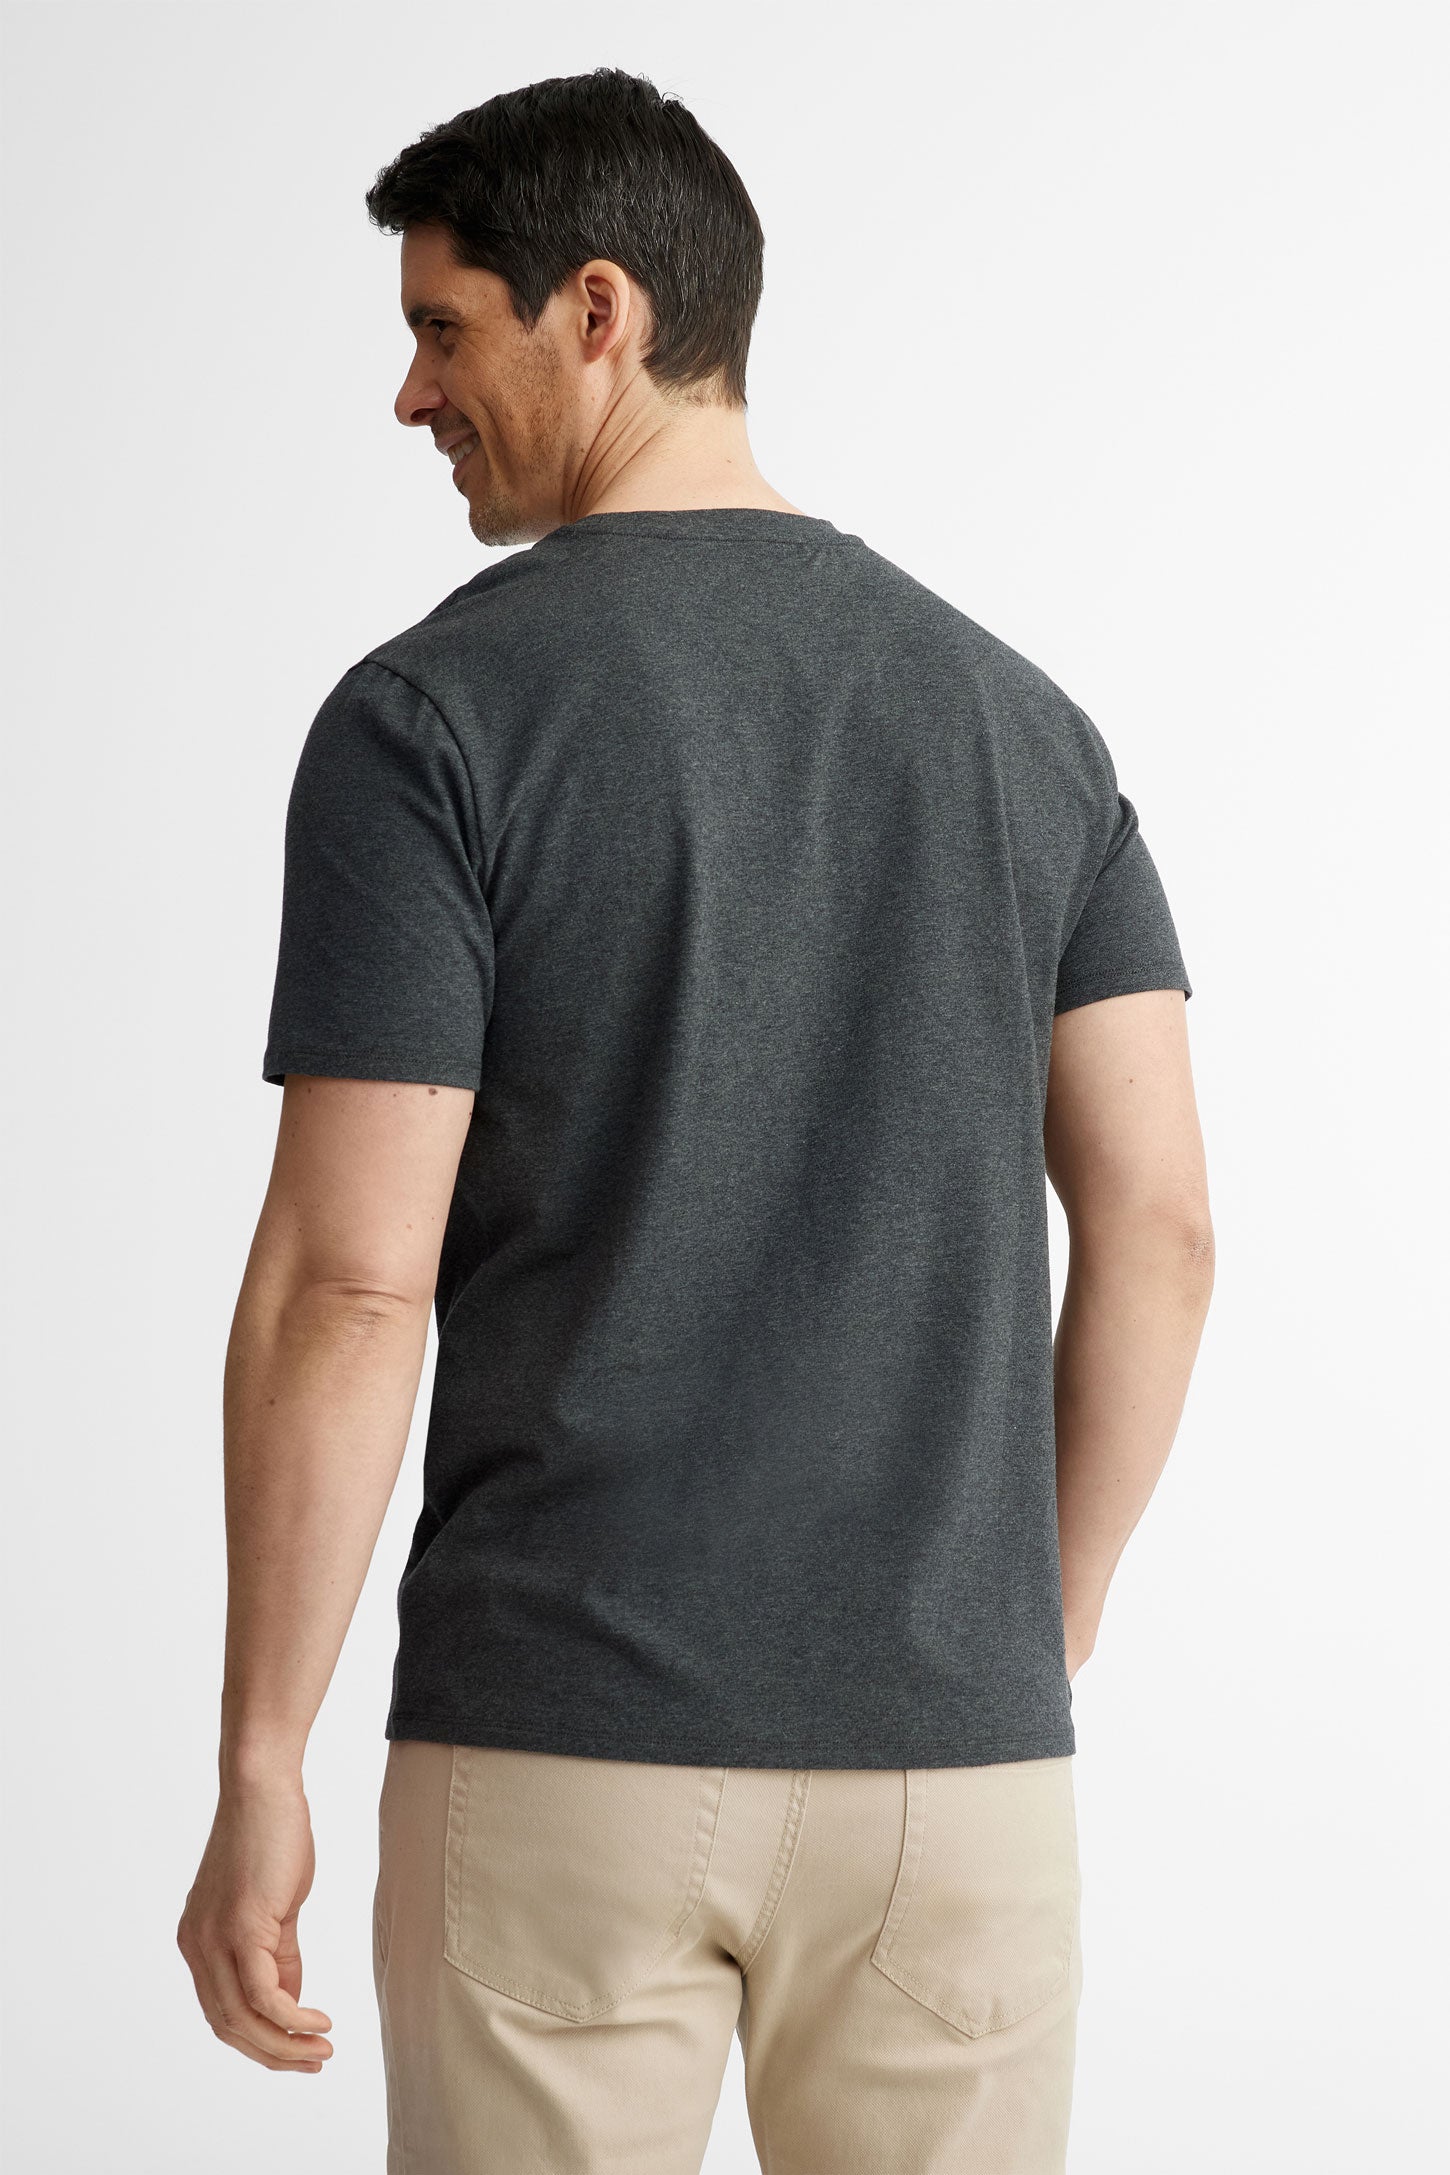 Duos futés, T-shirt col rond à poche, 2/30$ - Homme && GRIS FONCE